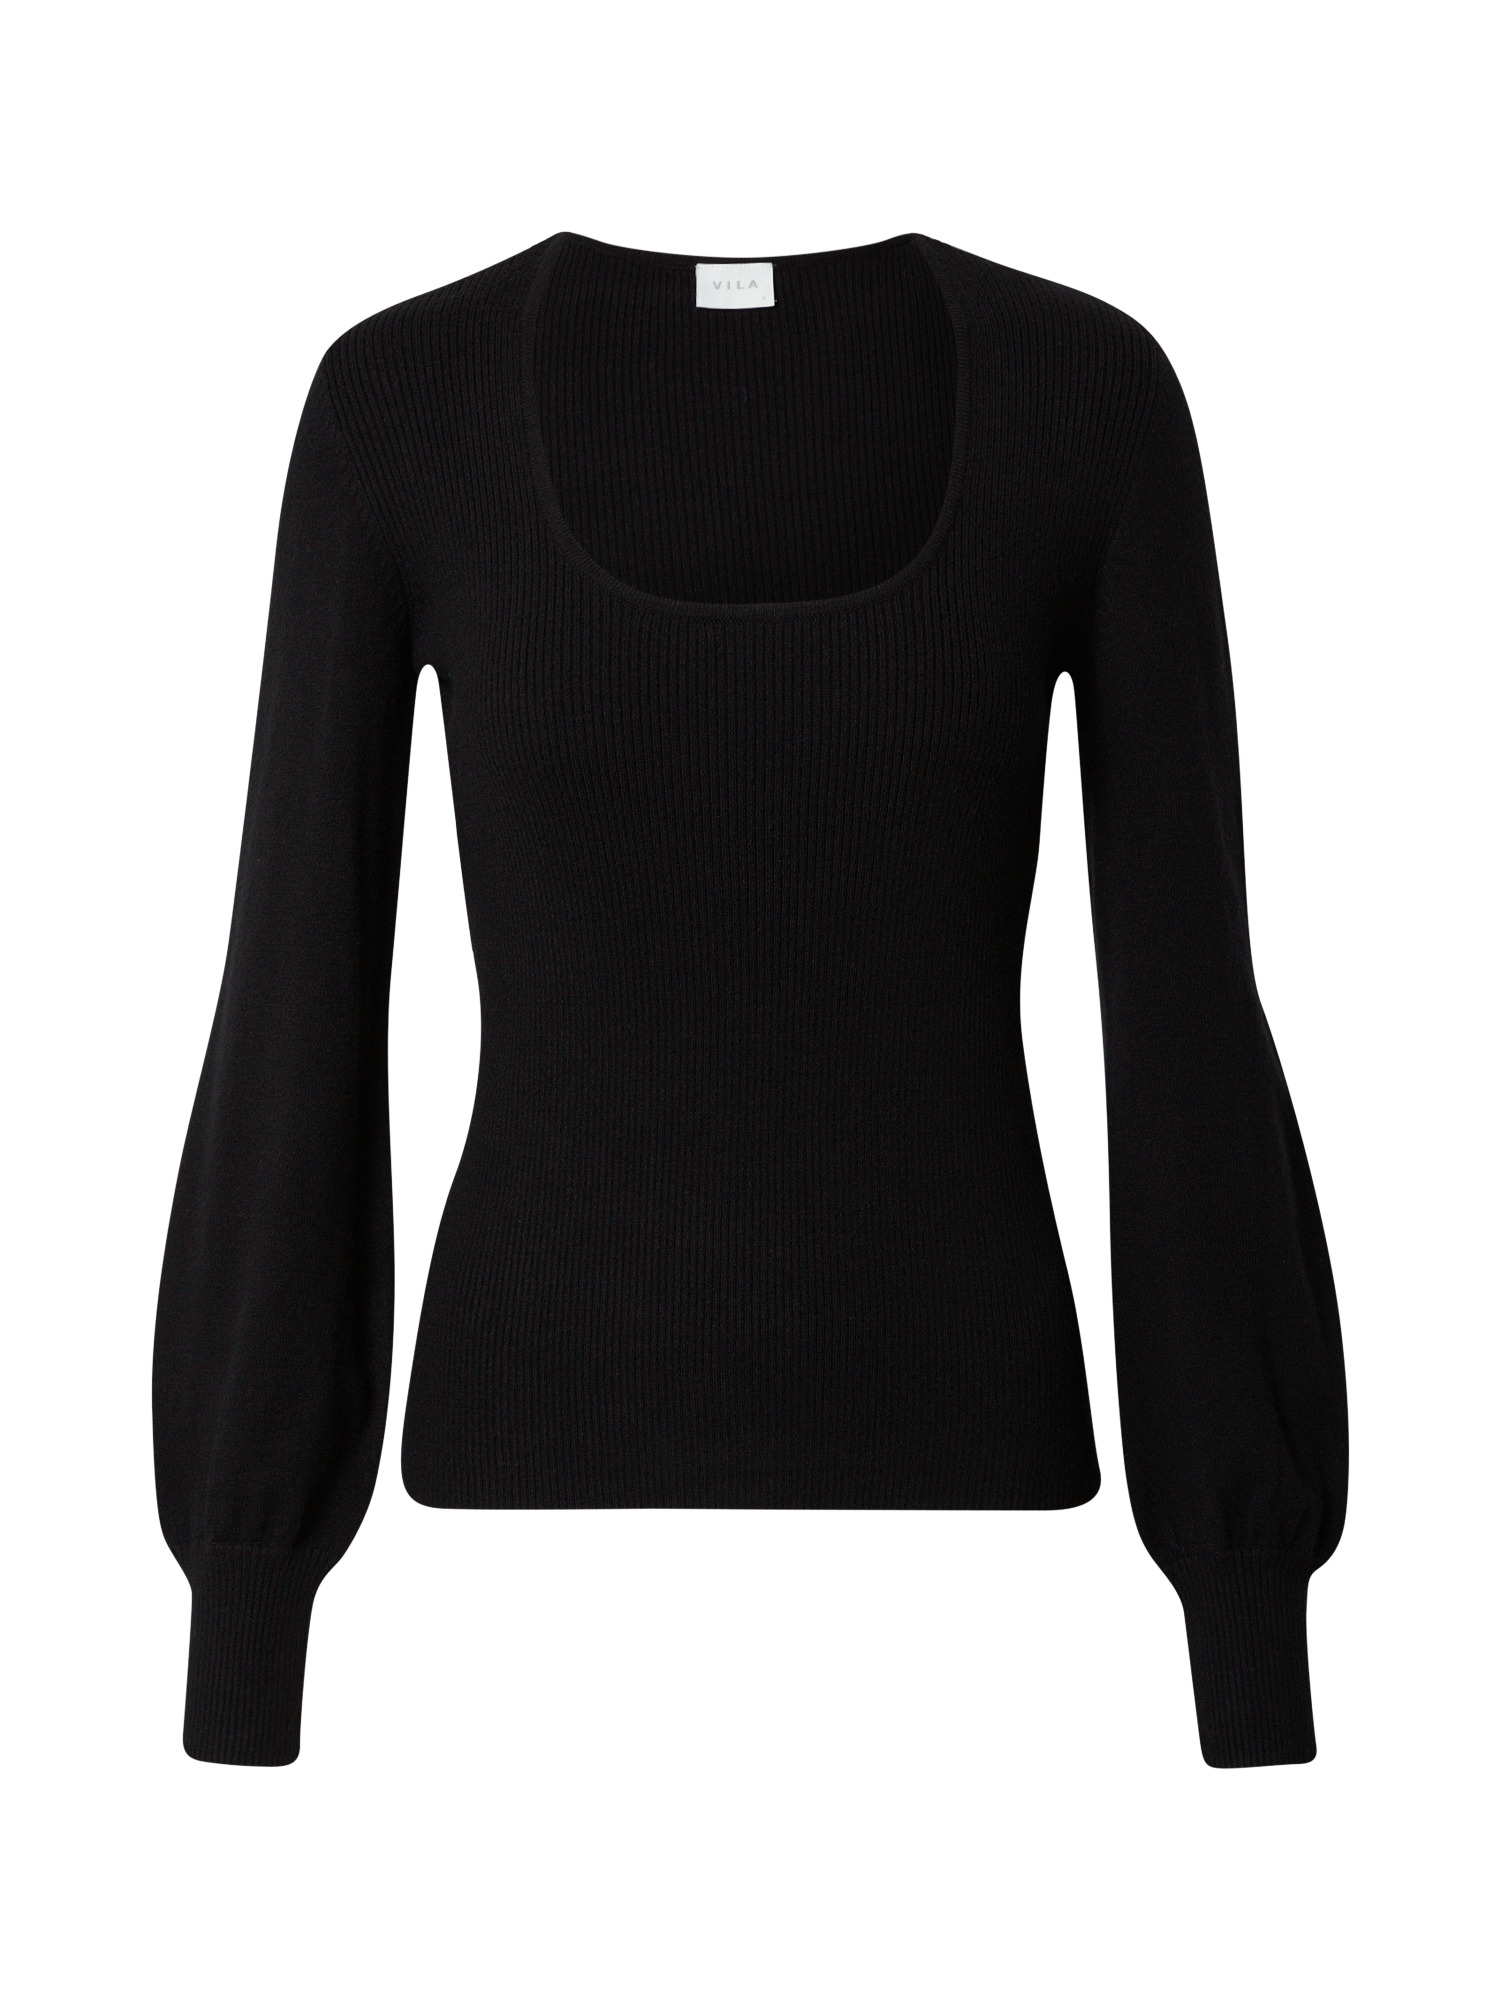 Odzież Kobiety VILA Sweter BESTINA w kolorze Czarnym 